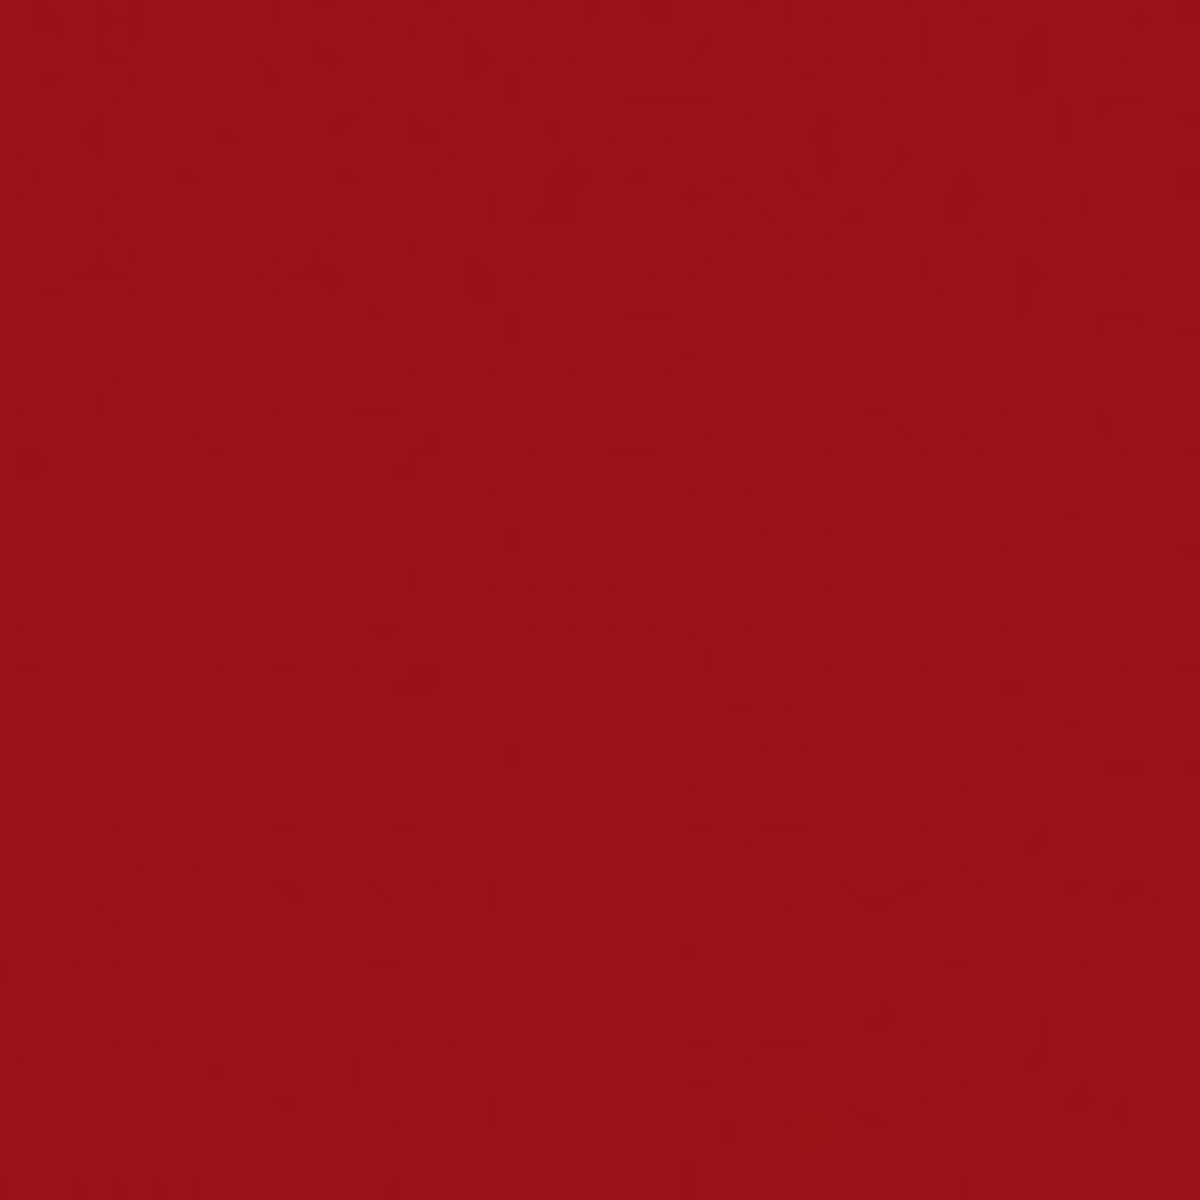 Shibaura Rot 1 Liter (Typen vor 1984) Zusatzinfo: 1 Liter Farbe Rot Verdünnbar spritzfähig Sehr gute Qualität Hohe Temperaturbeständigkeit Kurze Trockenzeit Bilder nur zur Orientierung!